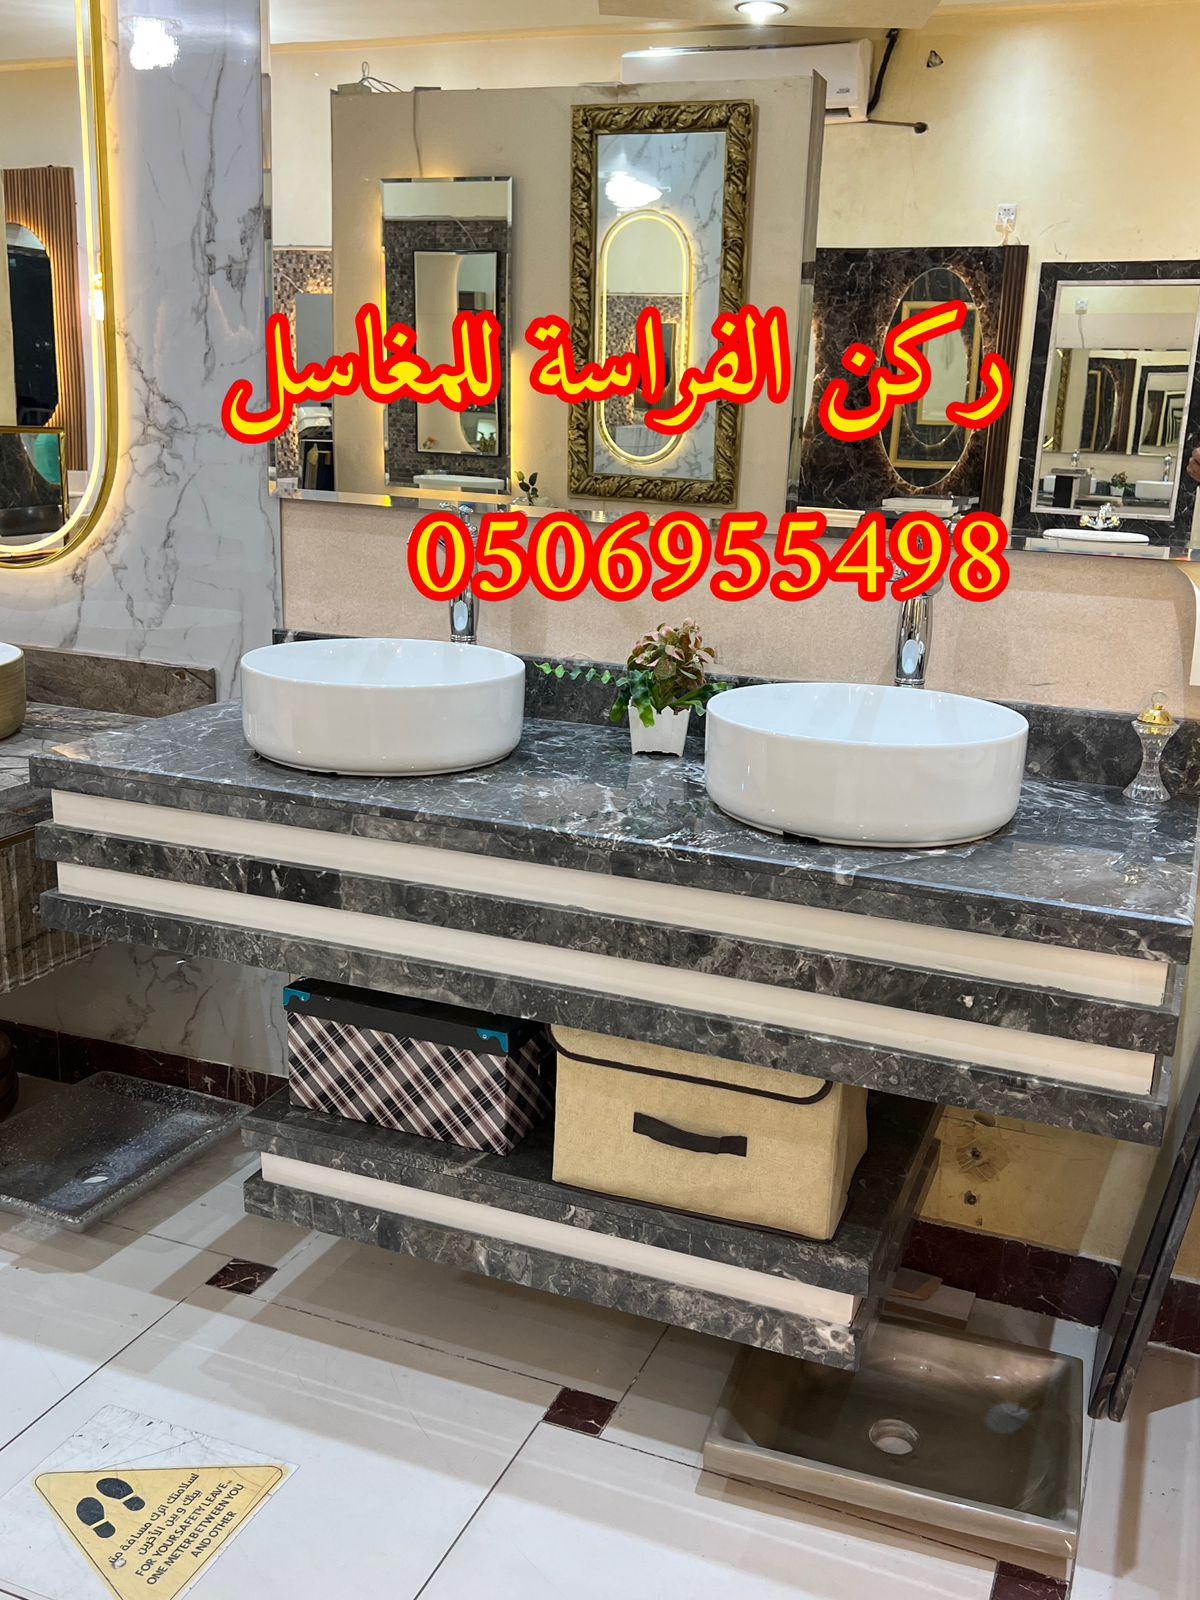 تفصيل احواض مغاسل رخام في الرياض,0506955498 206275608